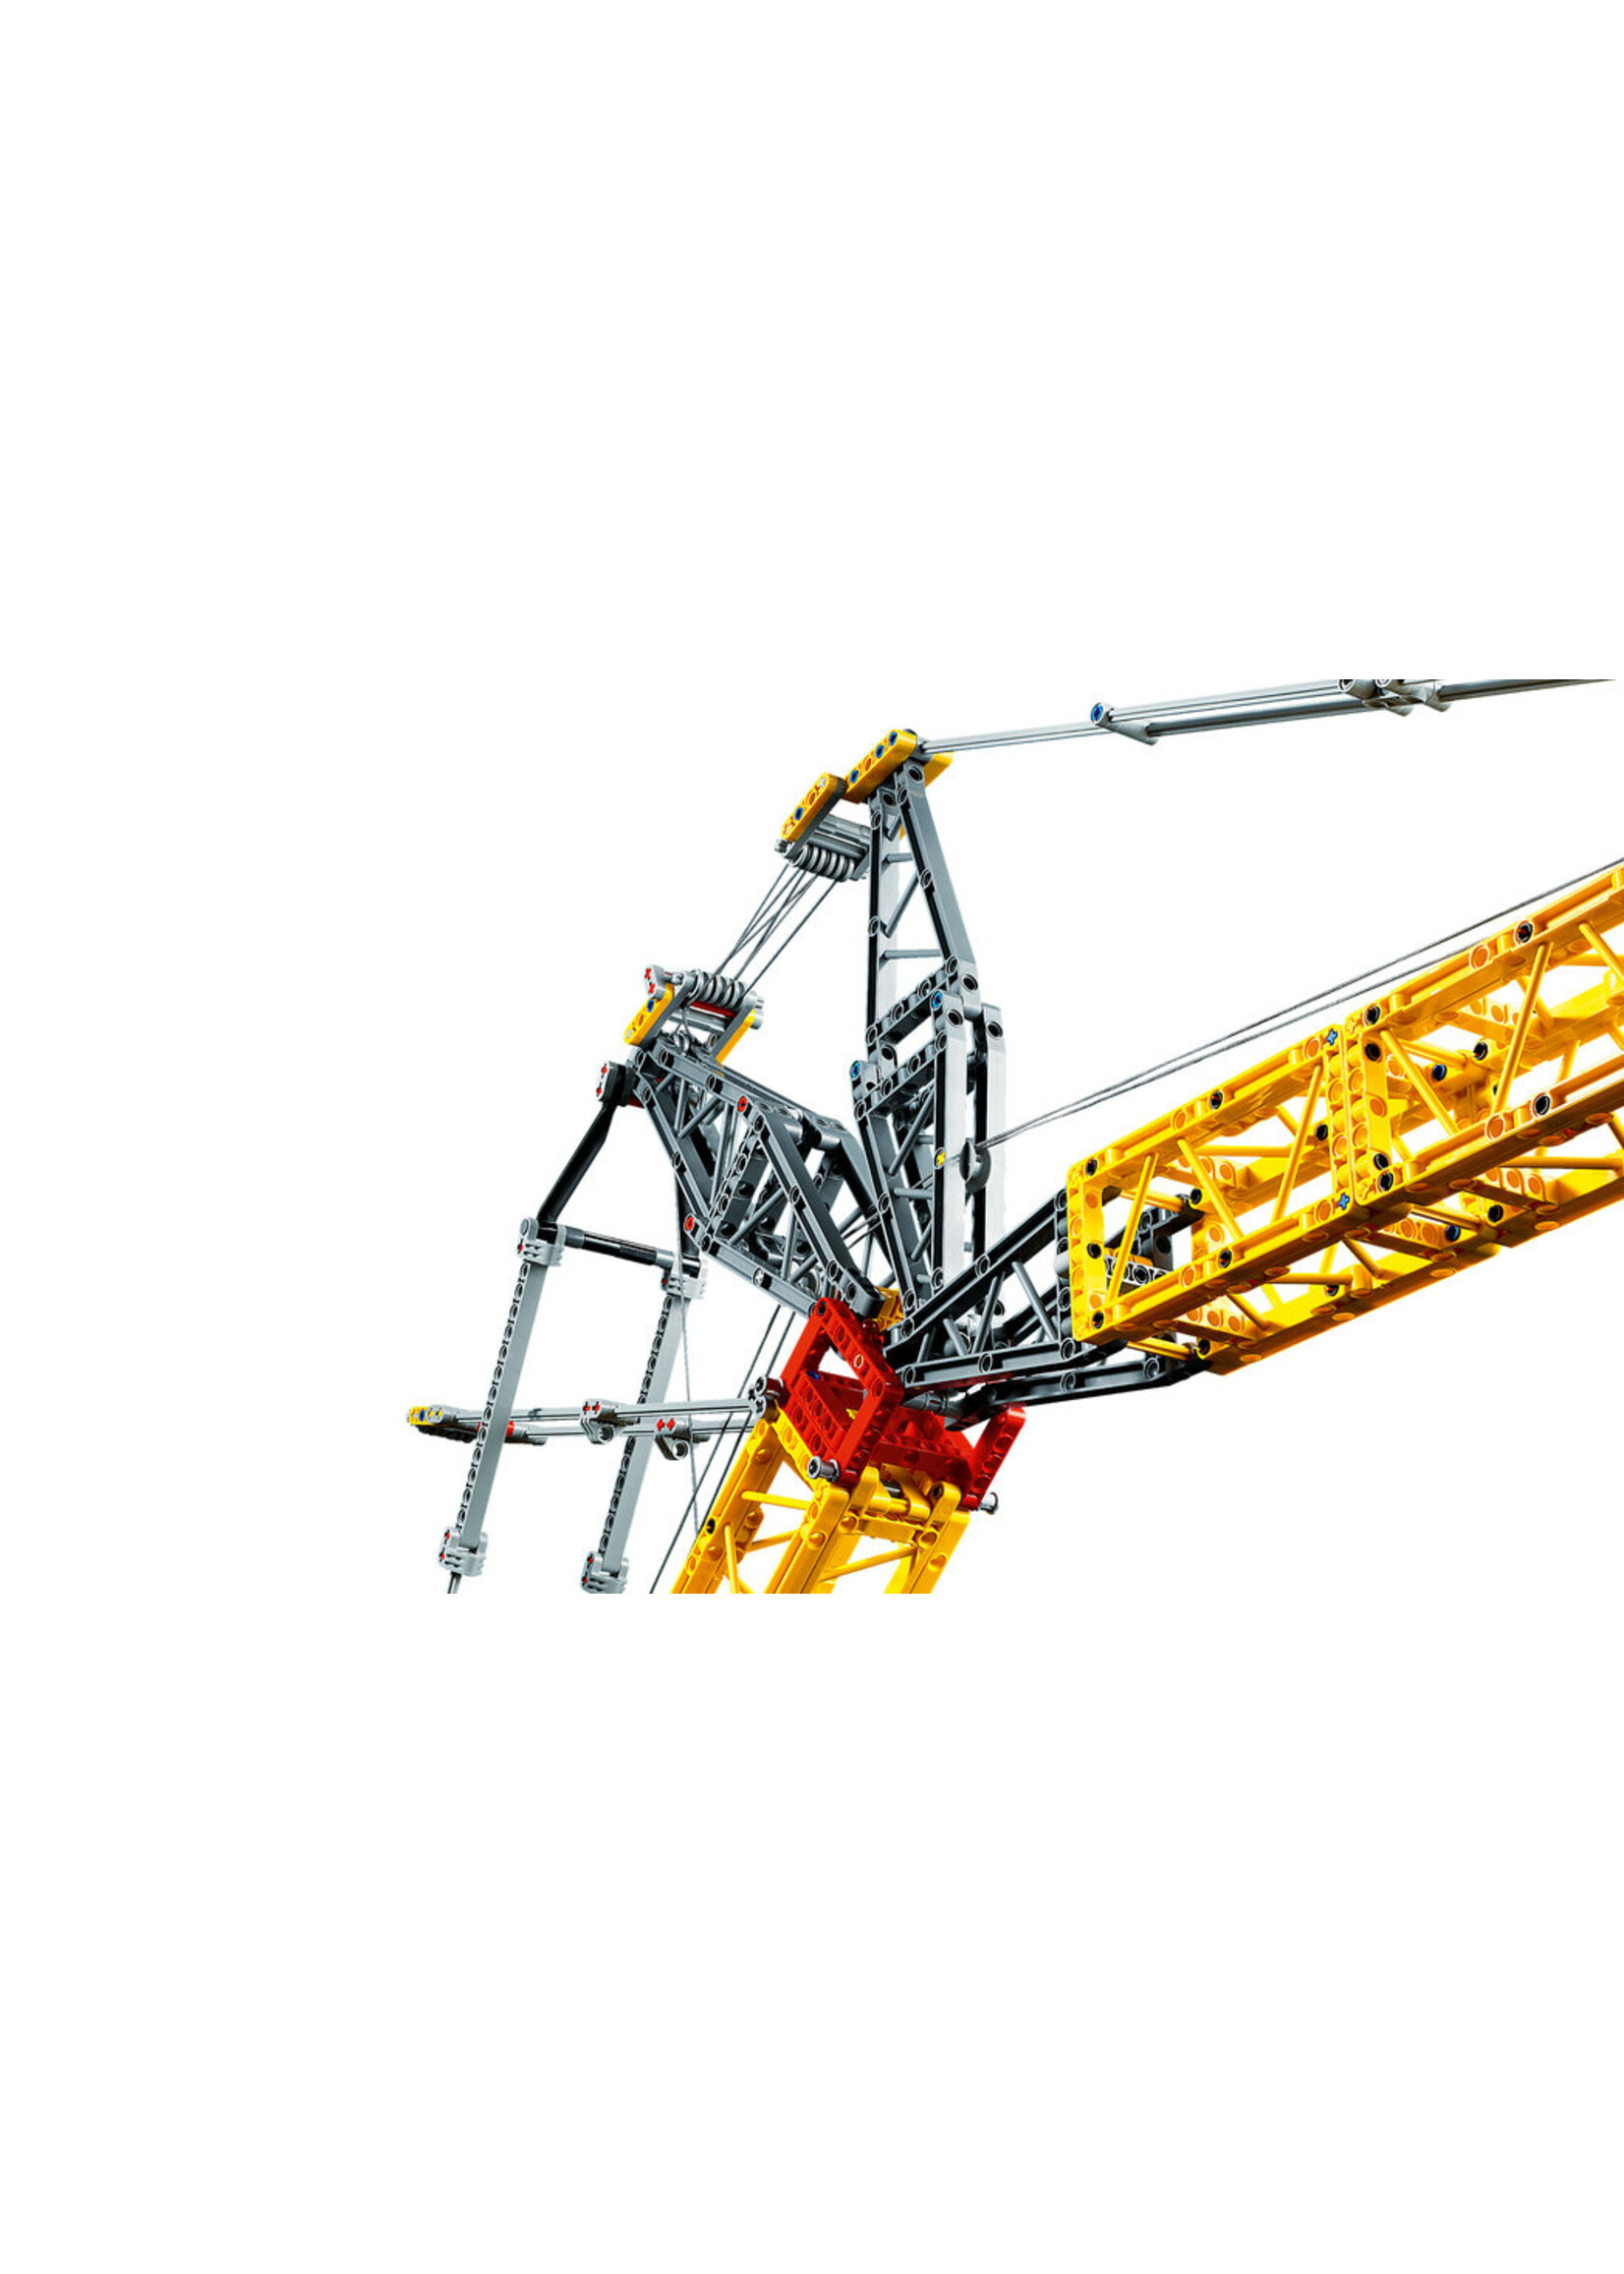 LEGO 42146 - Liebherr Crawler Crane LR 13000